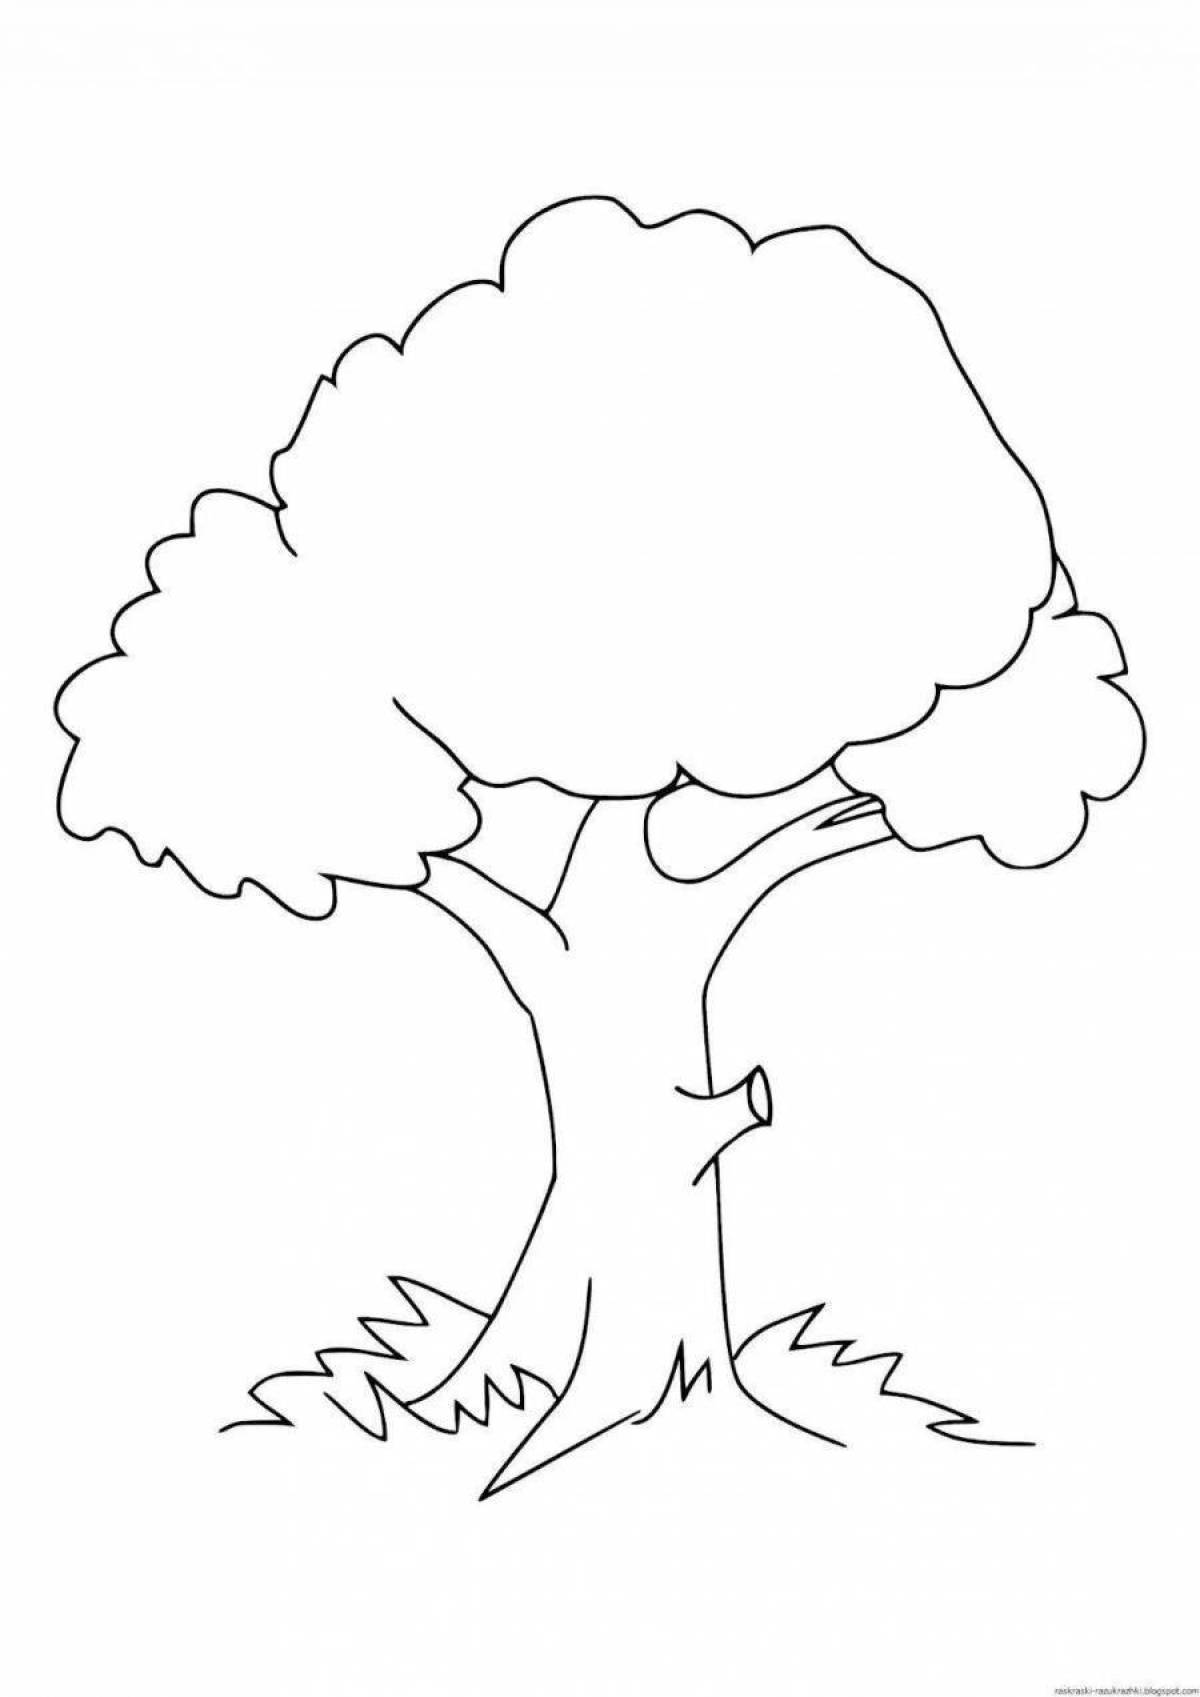 Дерево для детей шаблон #9